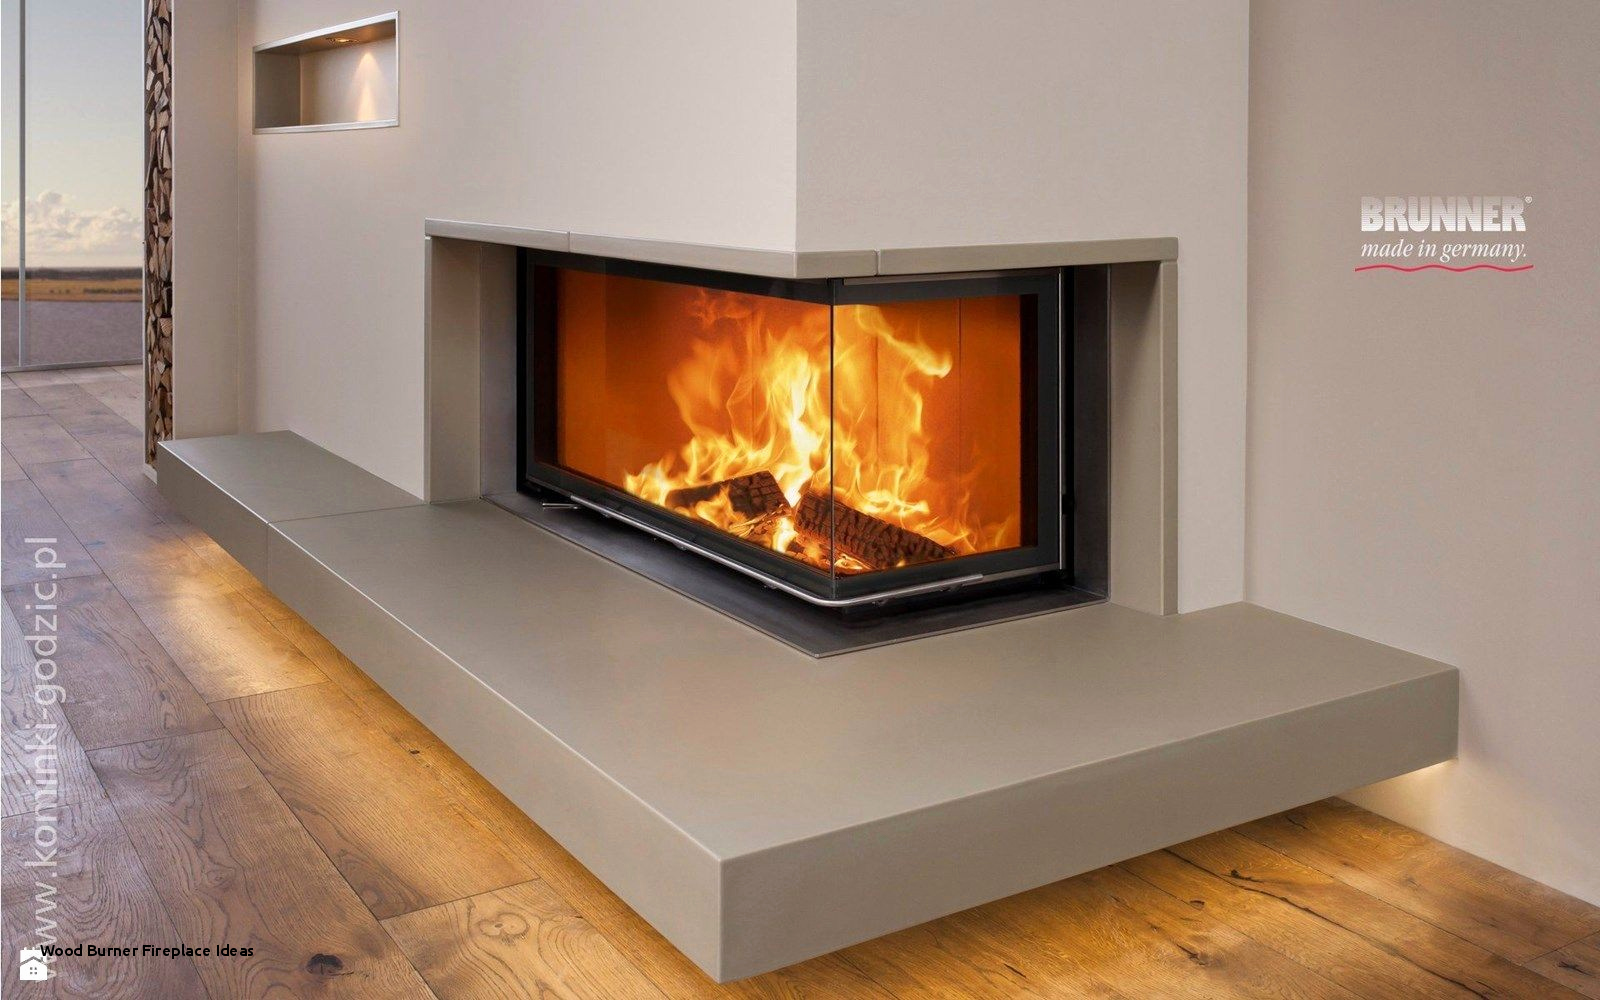 Wood Burner Fireplace Ideas Best Of Vortigern 12kw Cast Iron Woodburning Multifuel Stove V006